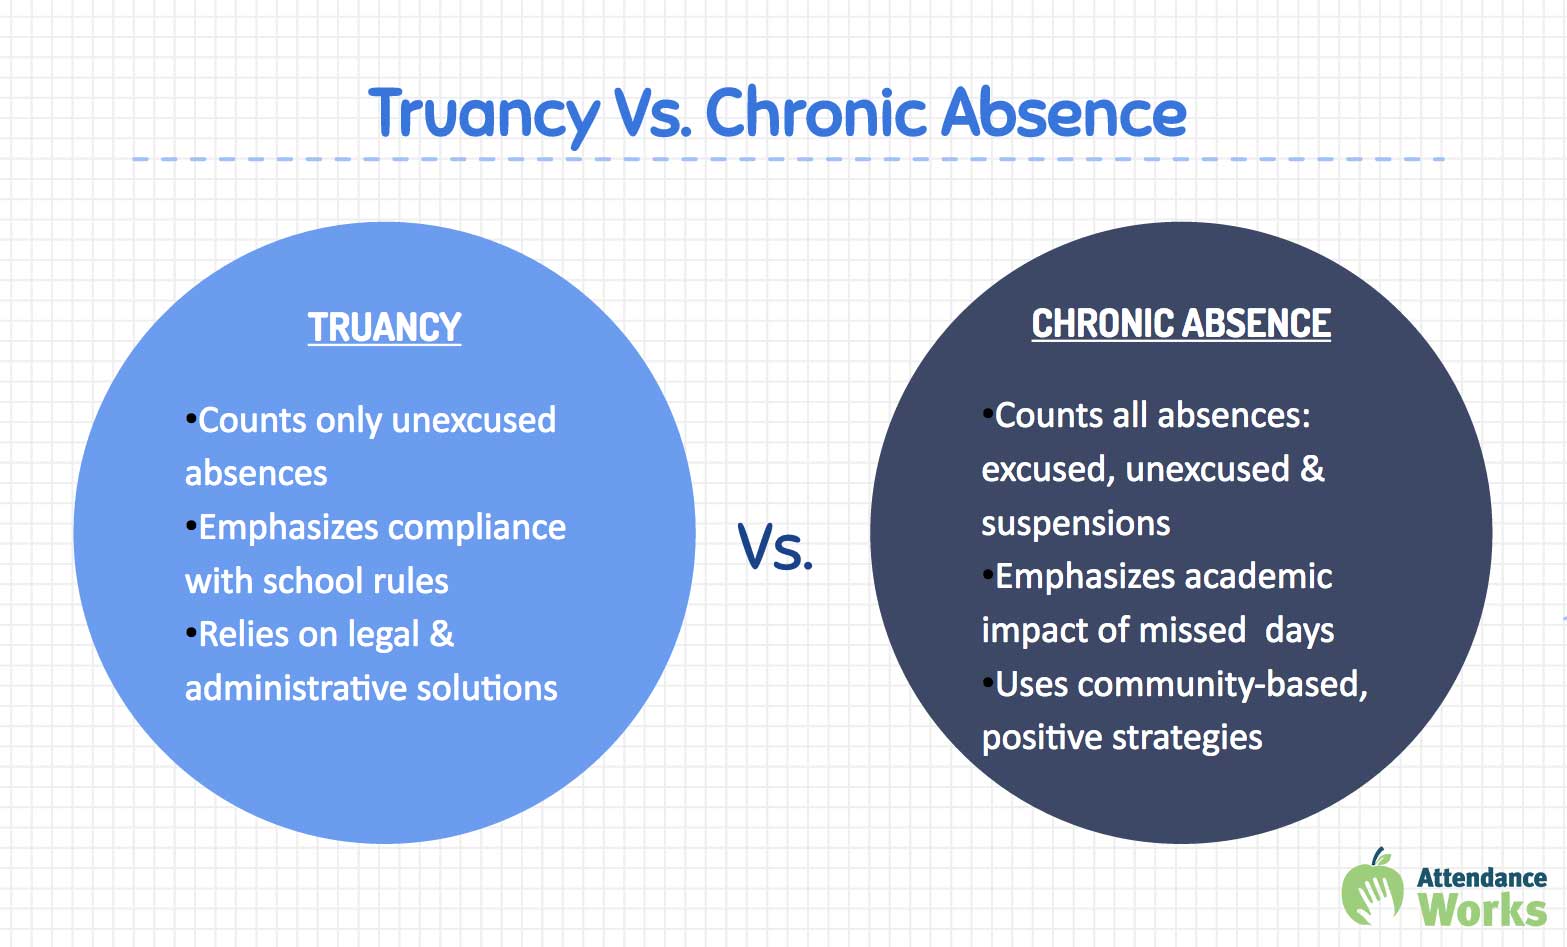 Truancy vs Chronic Absence